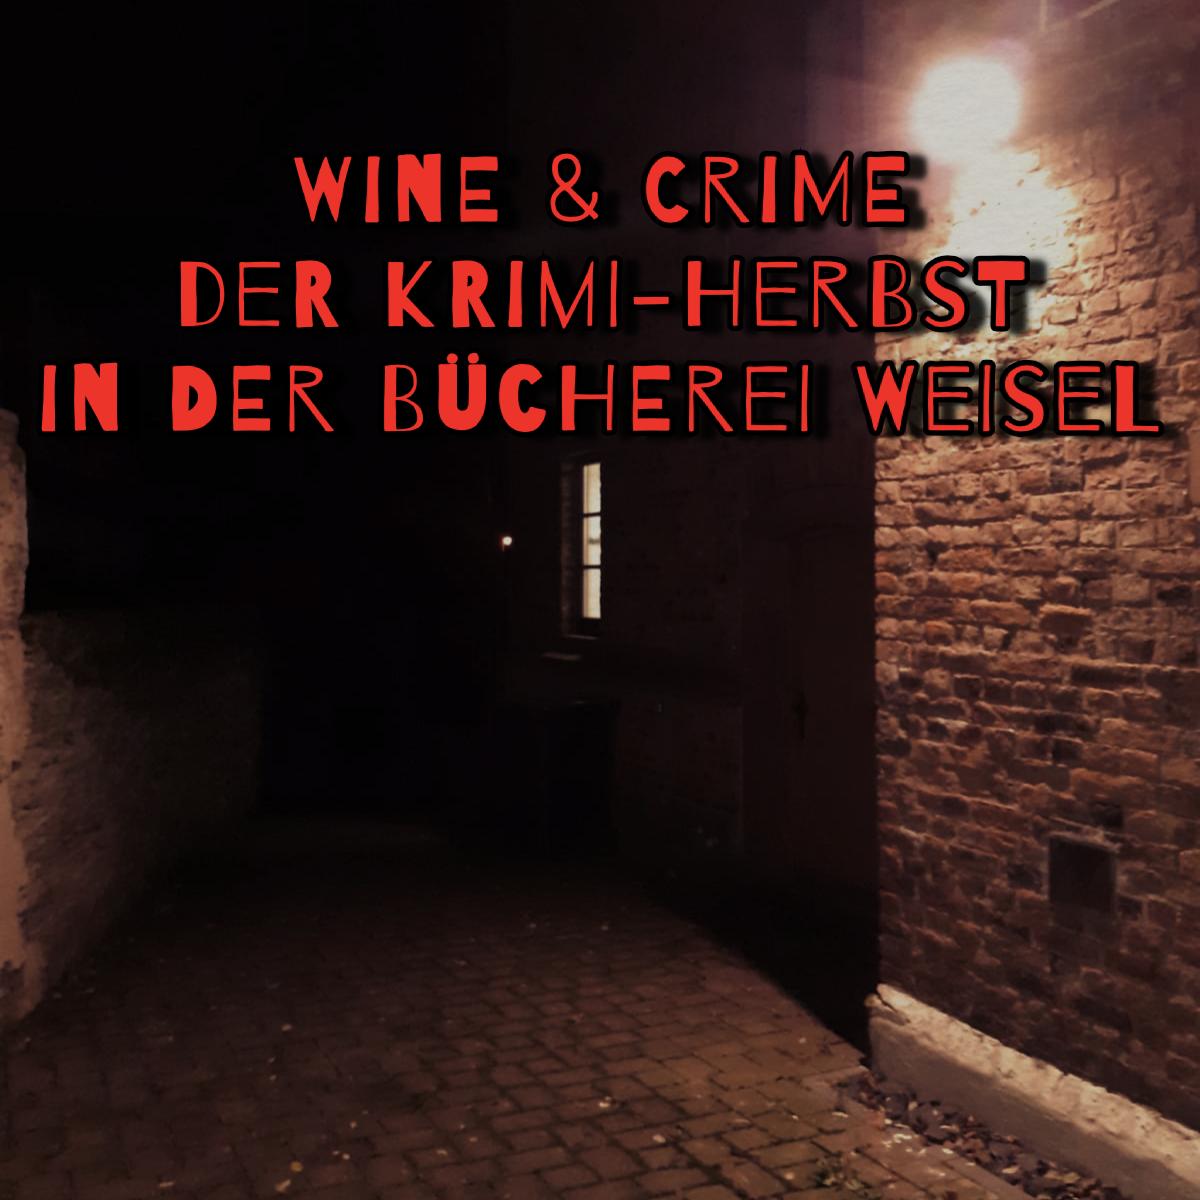 Wine und crime